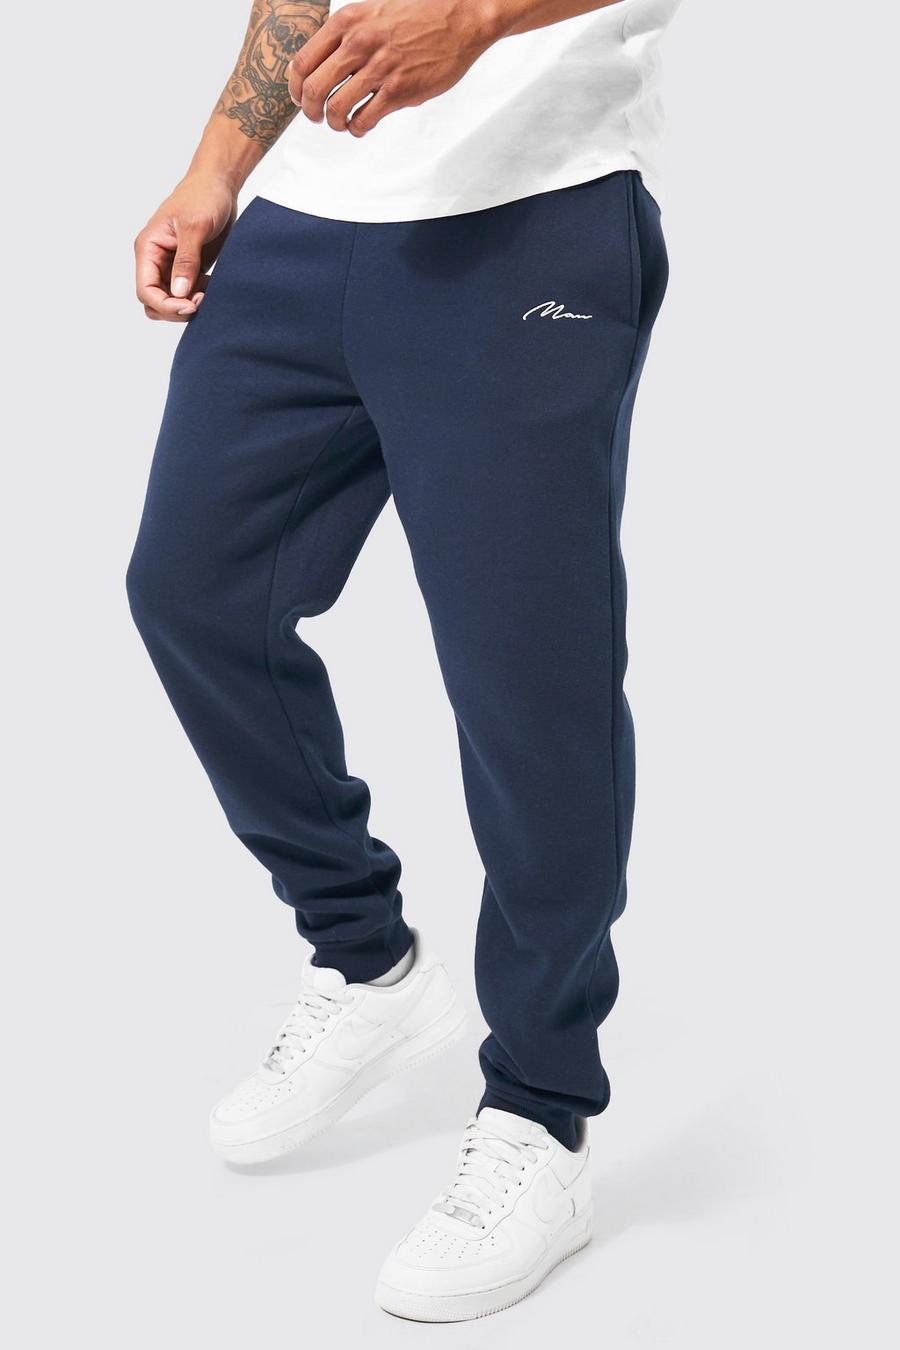 Pantaloni tuta Slim Fit con scritta Man, Navy blu oltremare